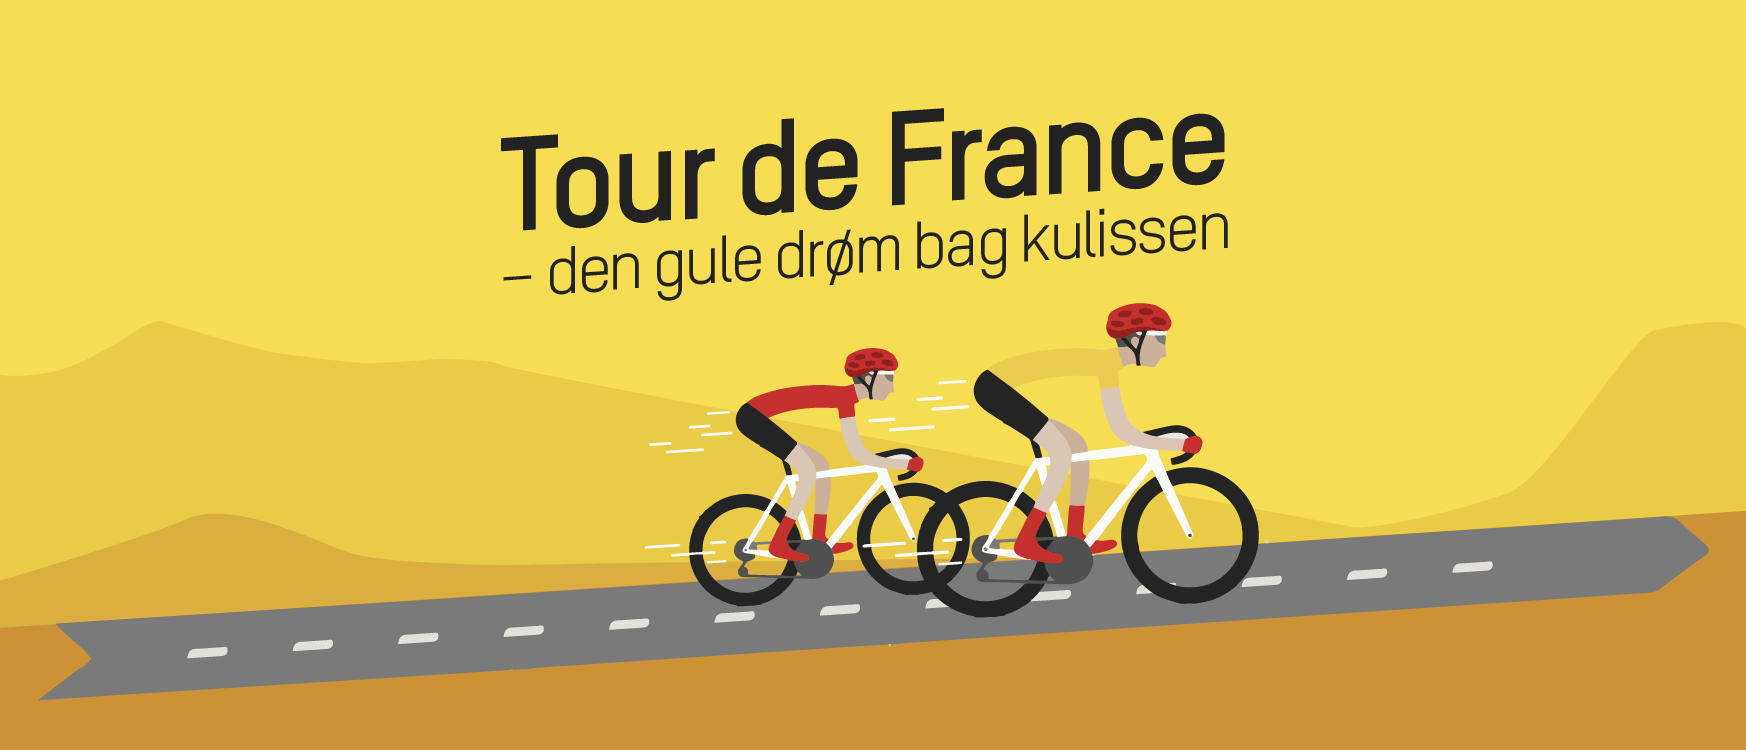 Få et spændende indblik bag Tour de France-kulissen! - JJ Kommunikation